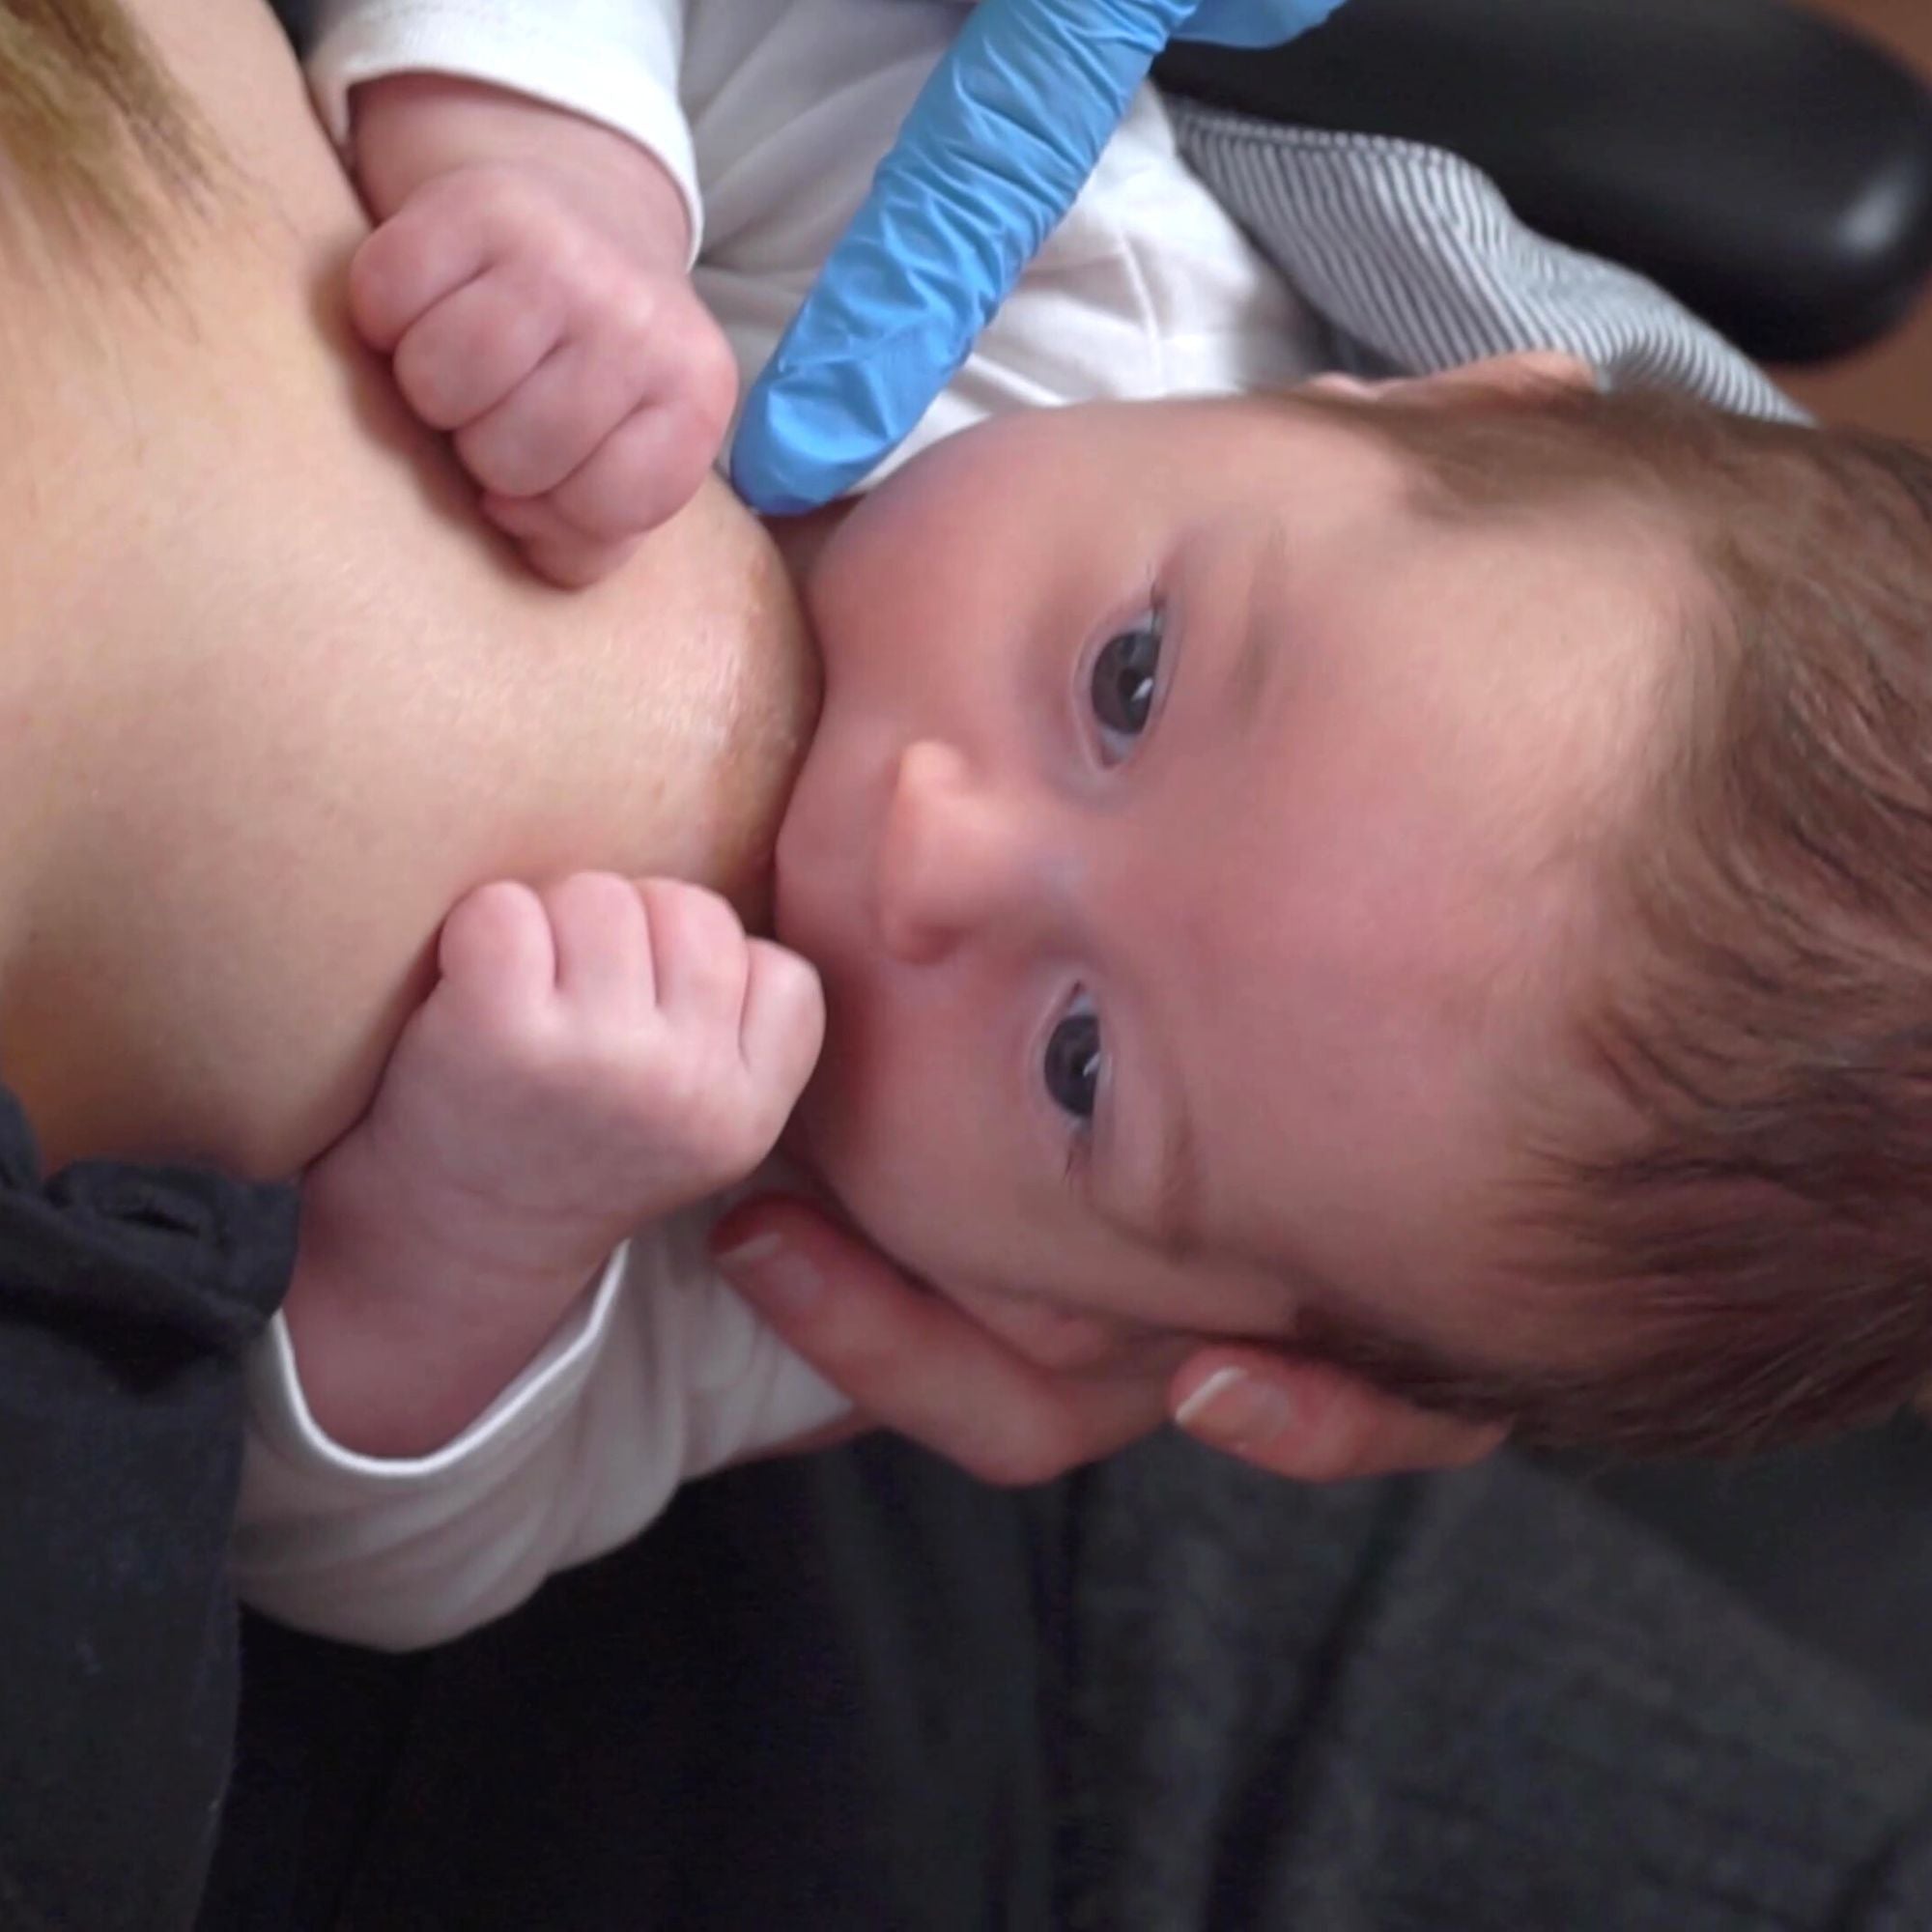  videocorso allattamento online: come allattare al seno, come attaccare il neonato correttamente al seno e le migliori posizioni per allattare